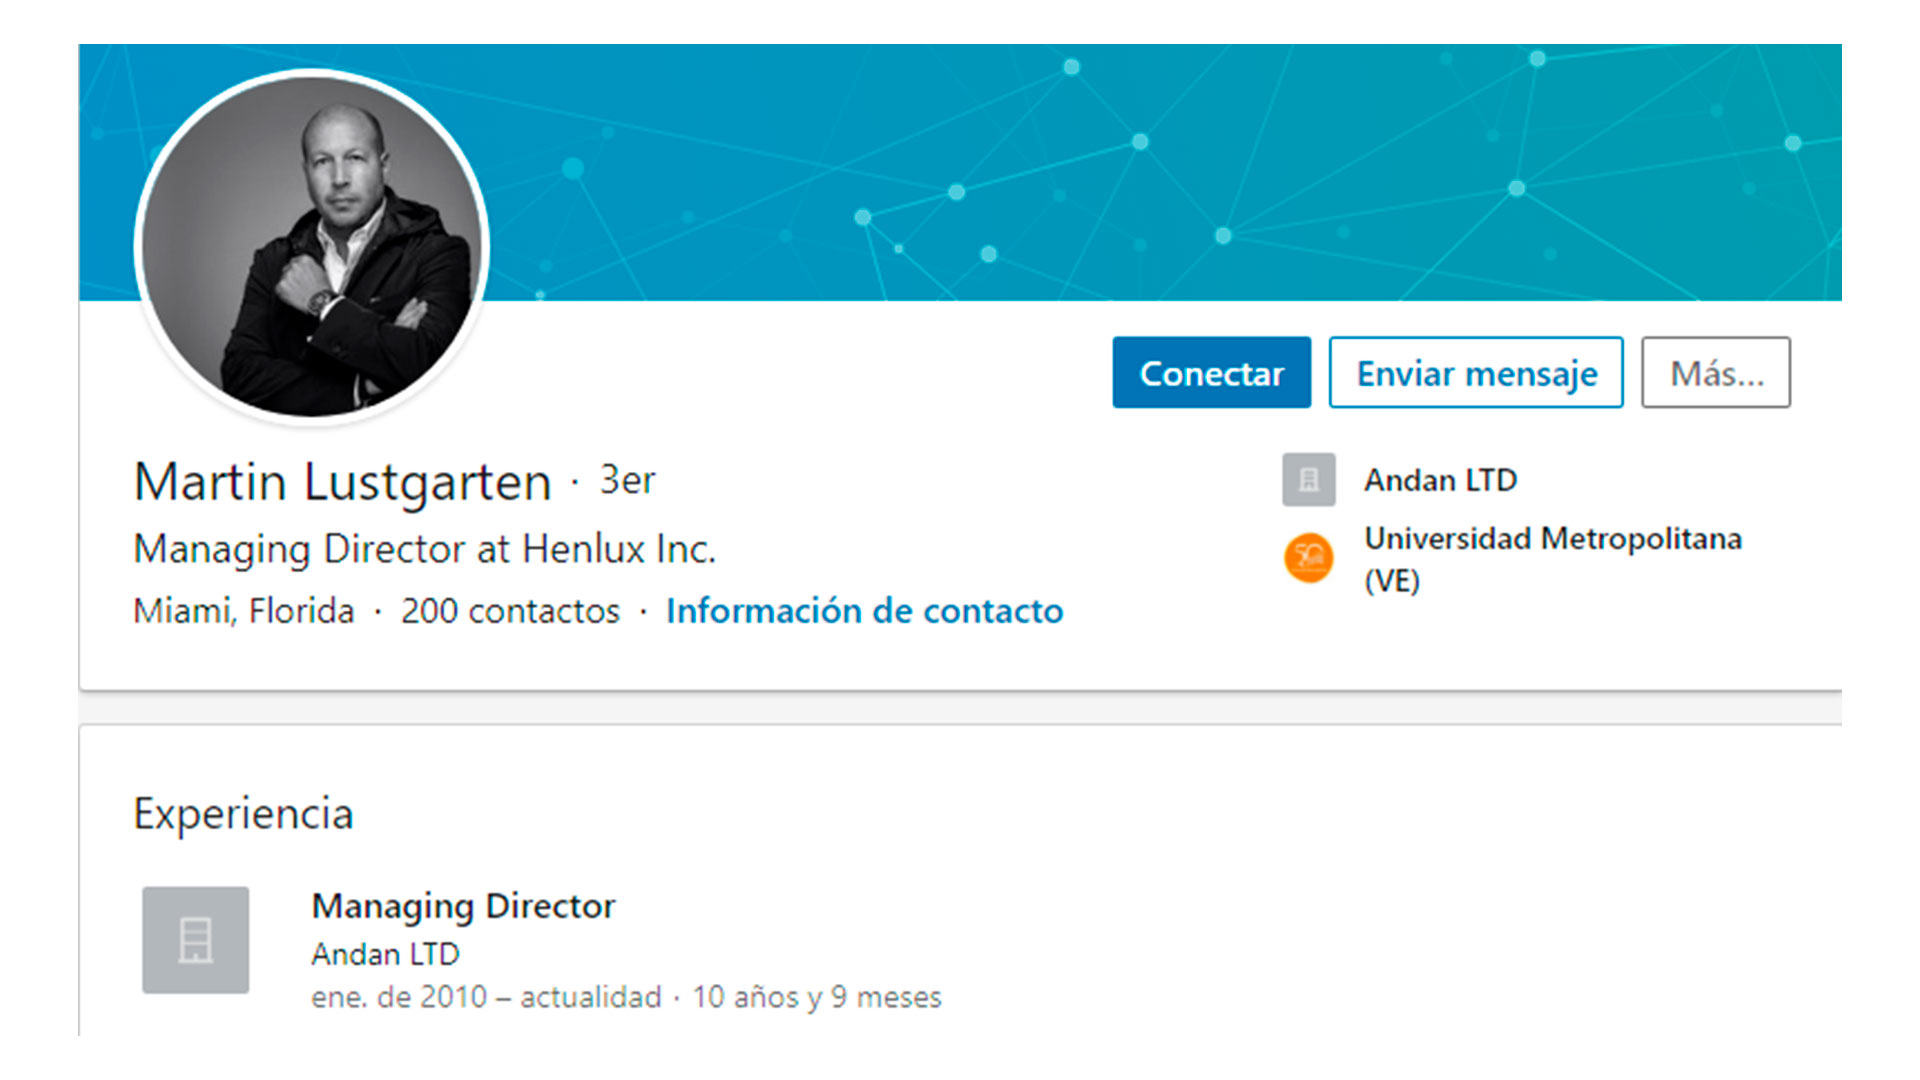 El perfil de Linkedin de Lustgarten, donde se presenta como director de Anda Ltd, una firma que tuvo transacciones con Mercantil Valores que despertaron sospechas volcadas en un SAR emitido en 2015.